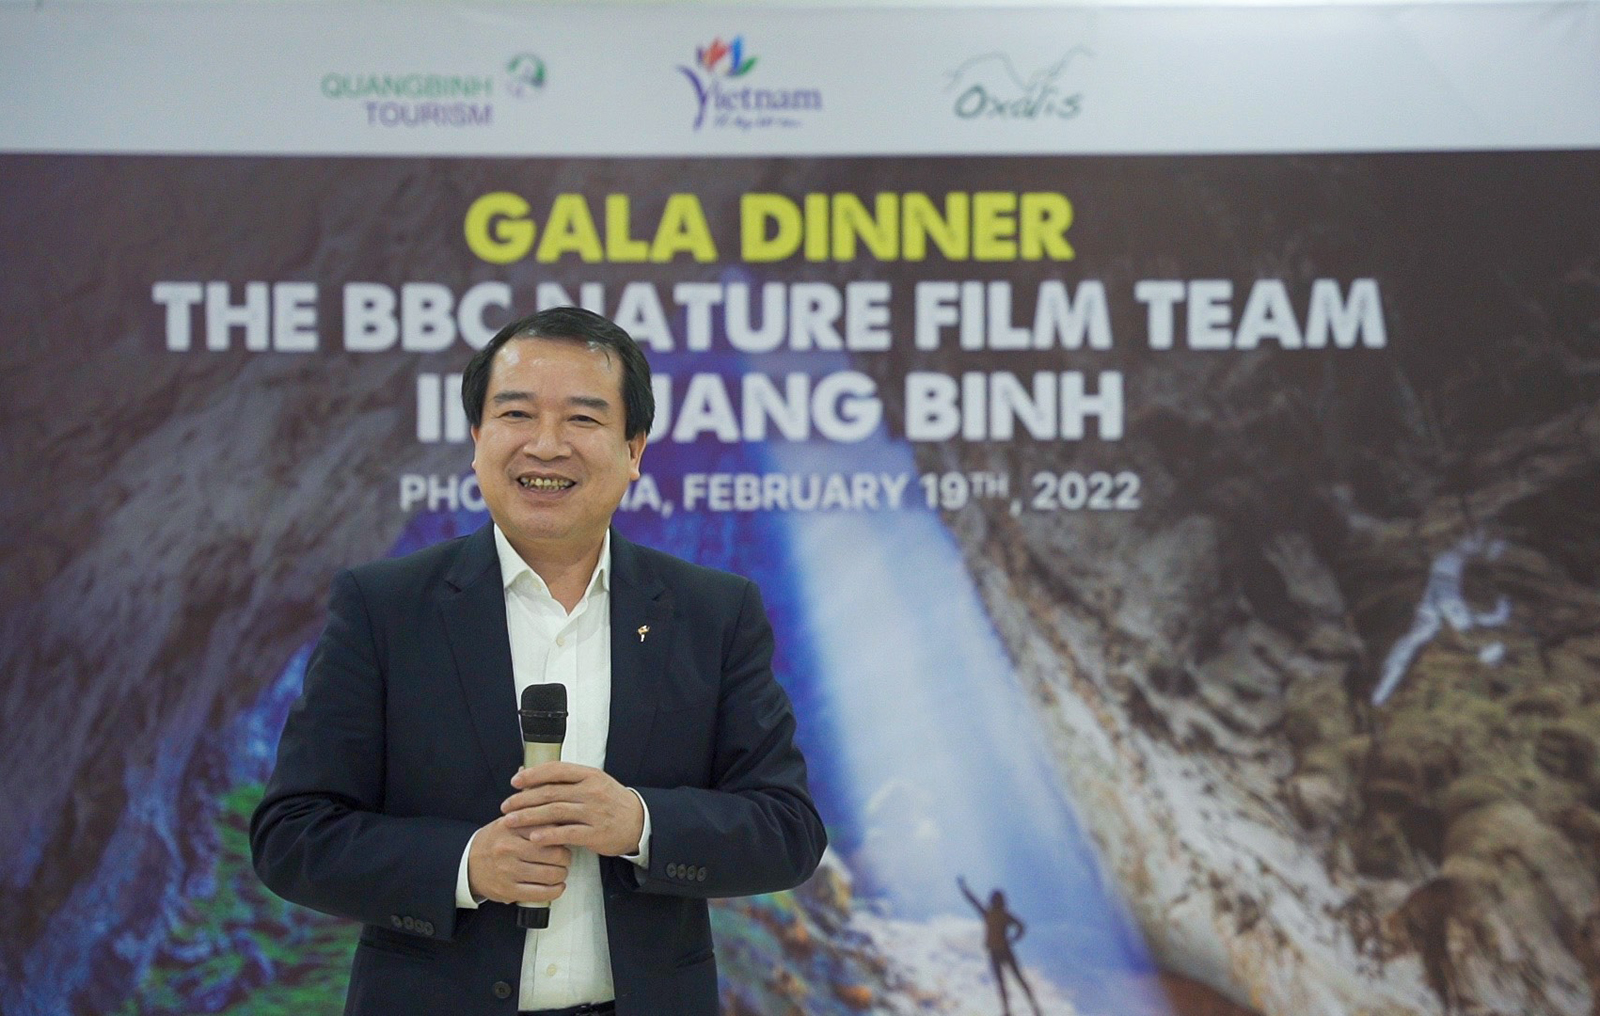 Phó Tổng cục trưởng Hà Văn Siêu trao tặng huy hiệu “Chinh phục Sơn Đoòng - hang động lớn nhất thế giới” cho đoàn làm phim BBC